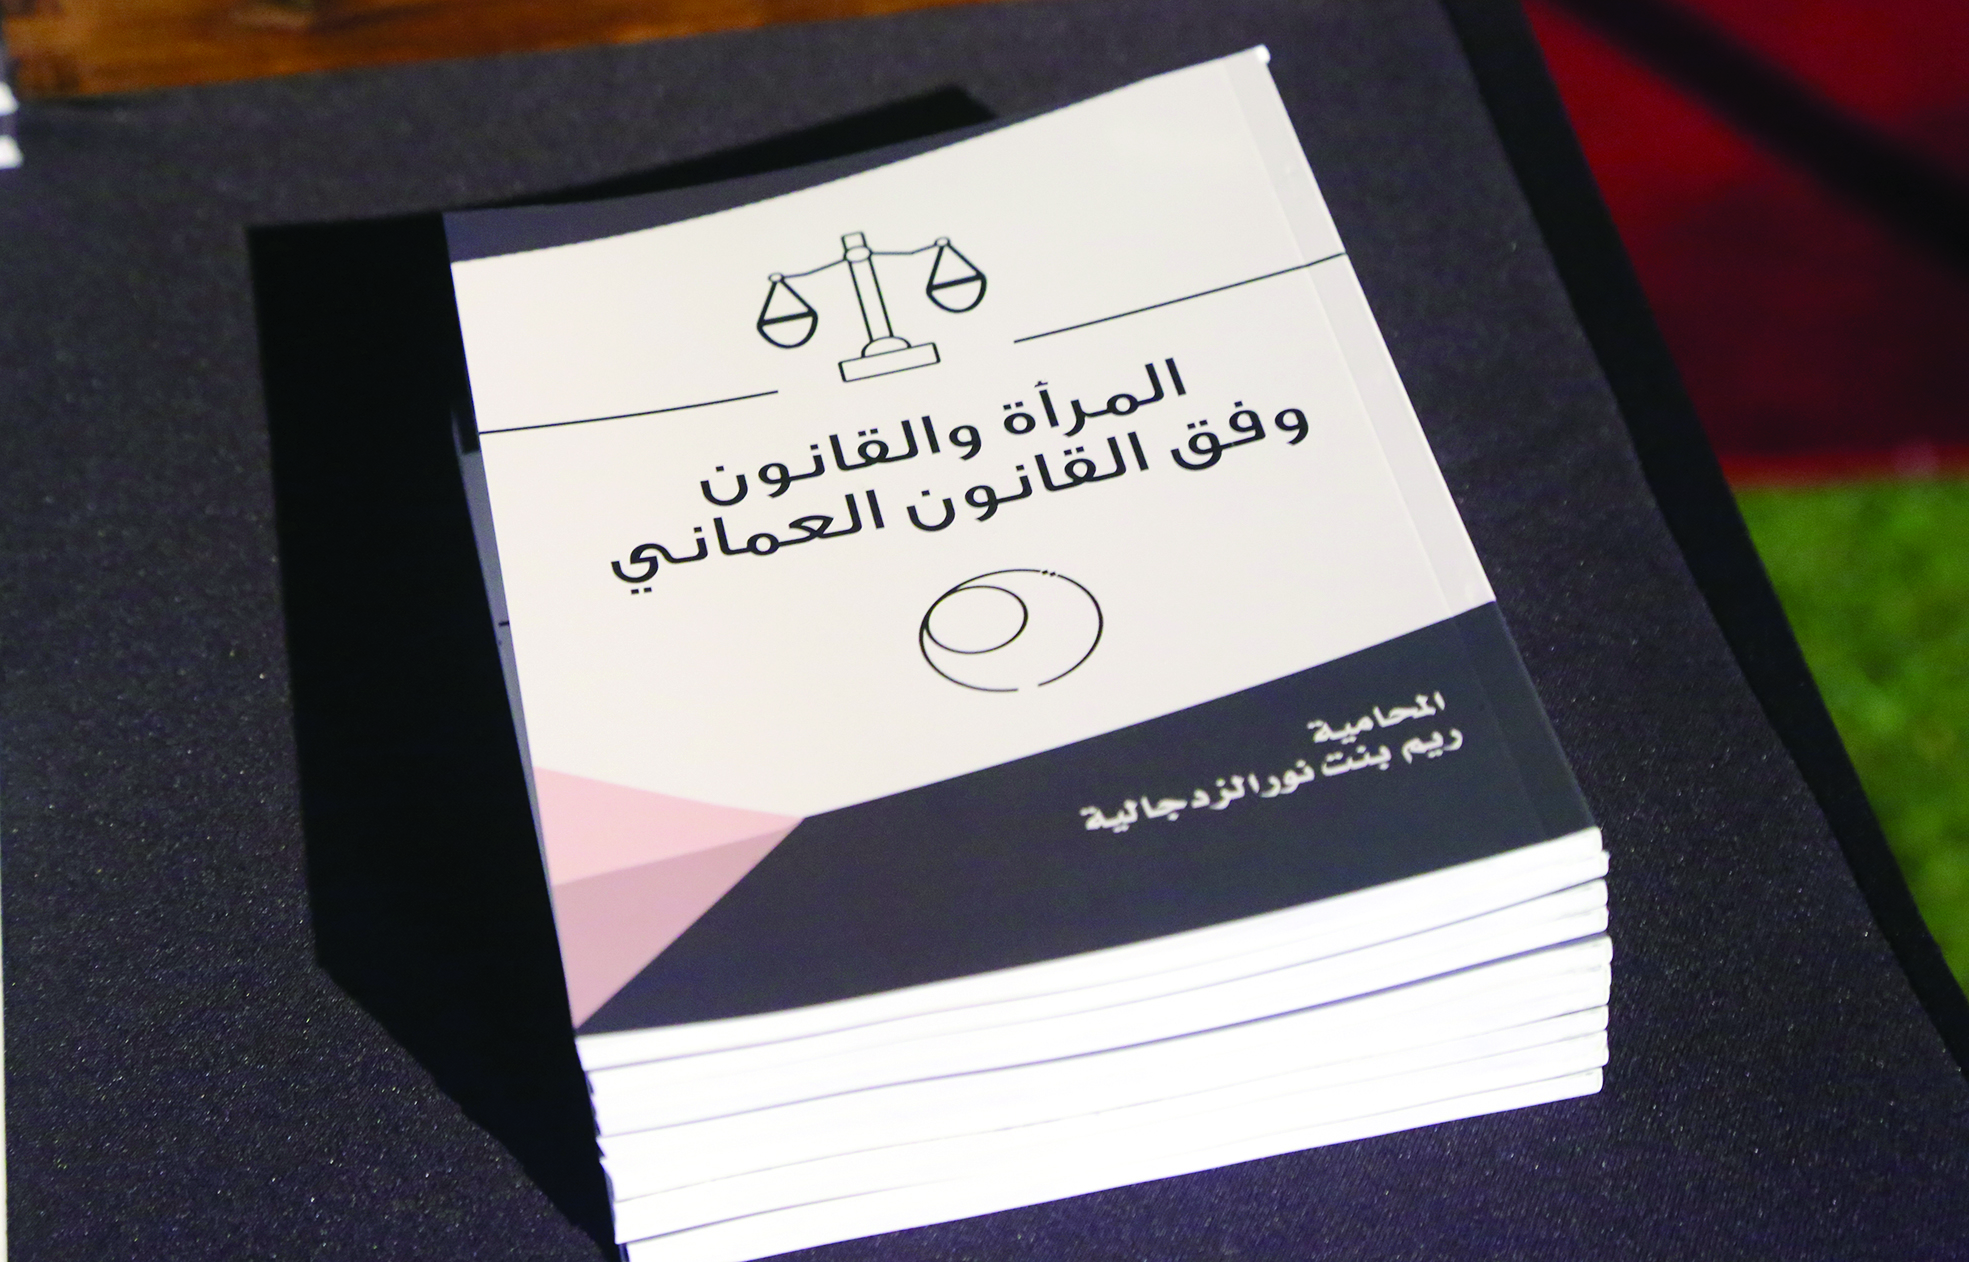 "المرأة والقانون" كتاب لتوعية المرأة بحقوقها